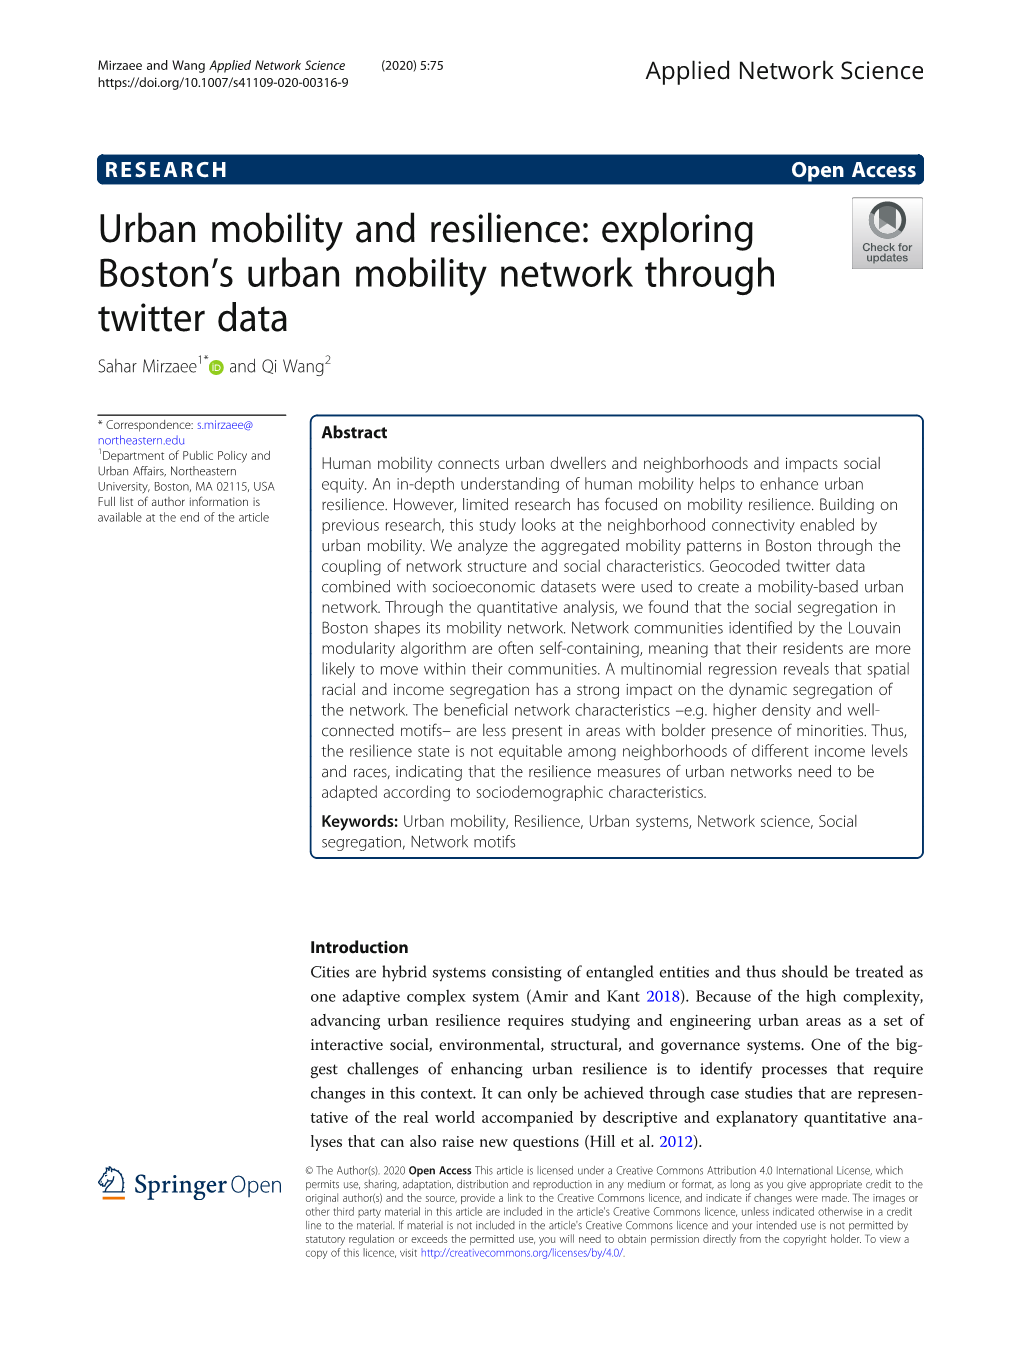 Exploring Boston's Urban Mobility Network Through Twitter Data